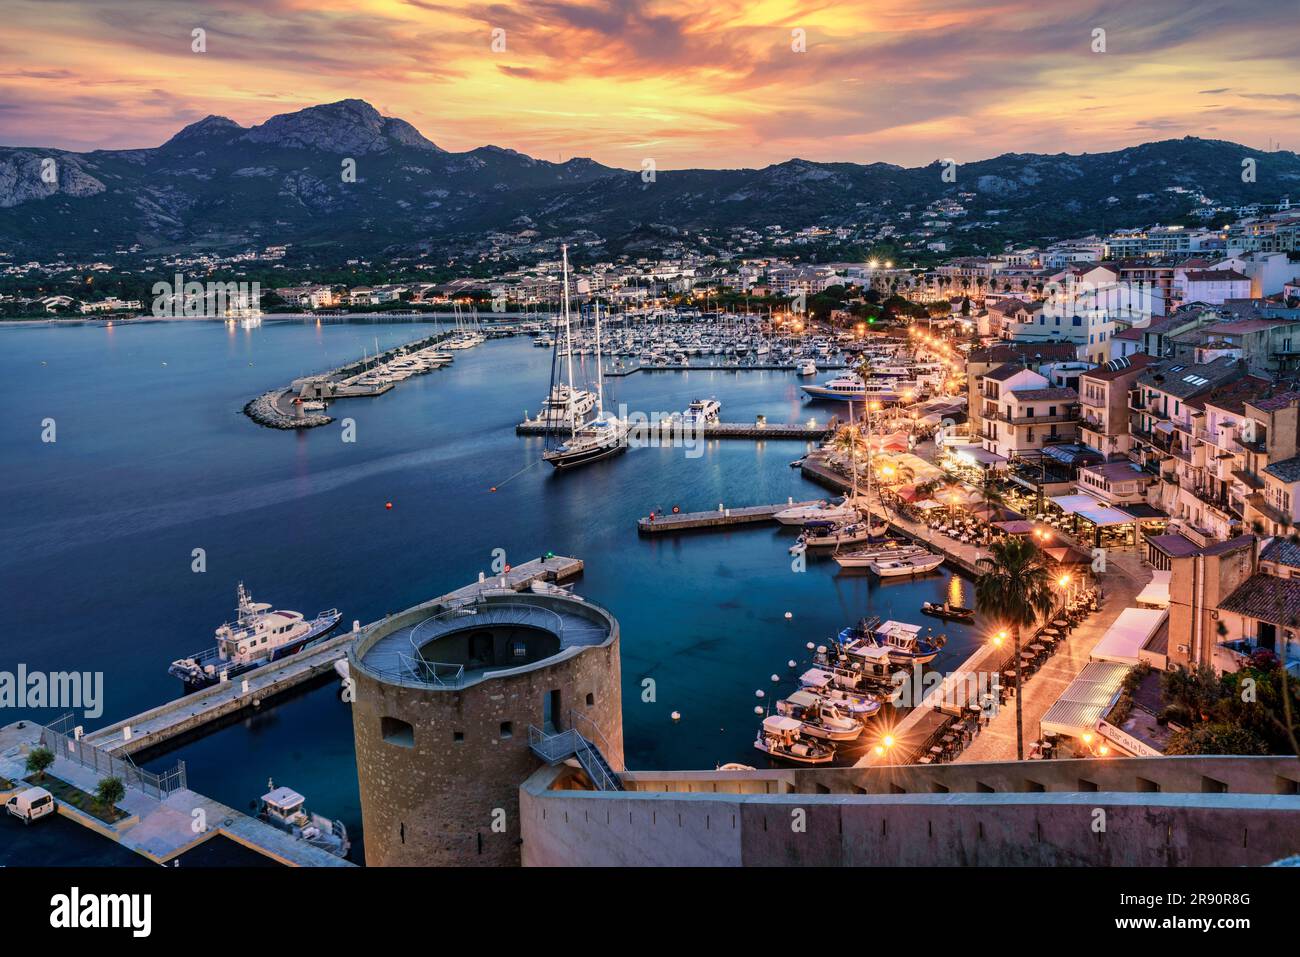 Calvi, Fischer und Yachthafen, Blick von dre Festung, Dämmerung, Korsika, Frankreich, Europa Stock Photo